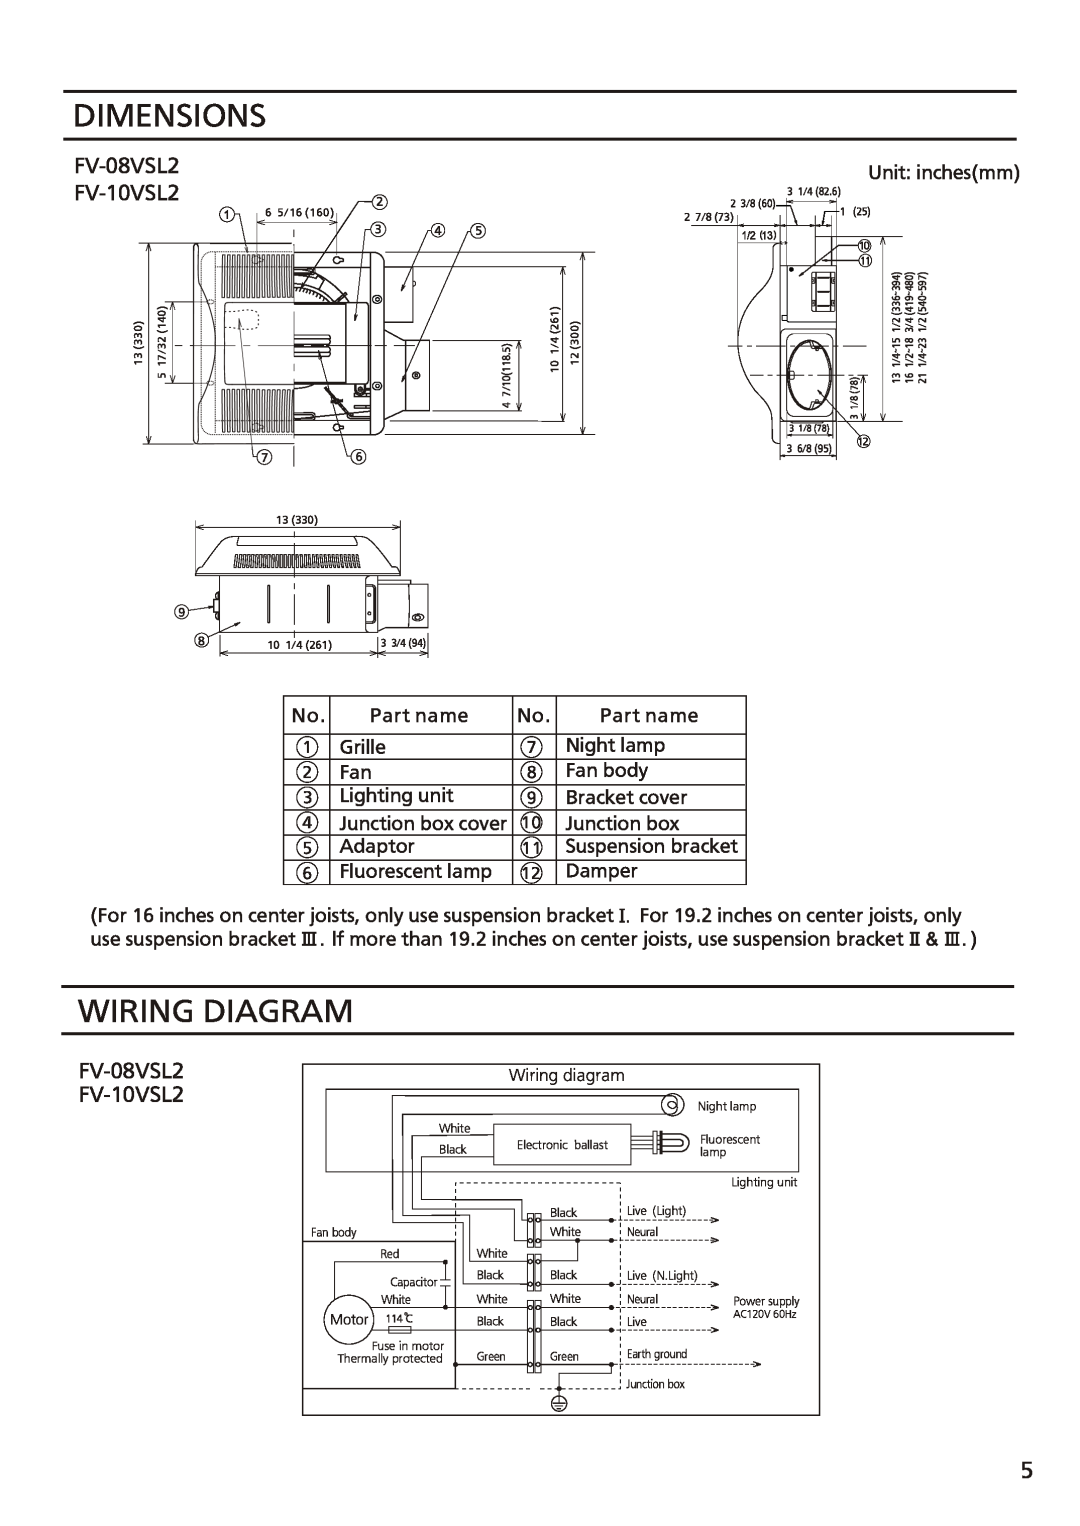 Panasonic FV-08vsl2 installation instructions Dimensions, Wiring Diagram, FV-08VSL2 FV-10VSL2 